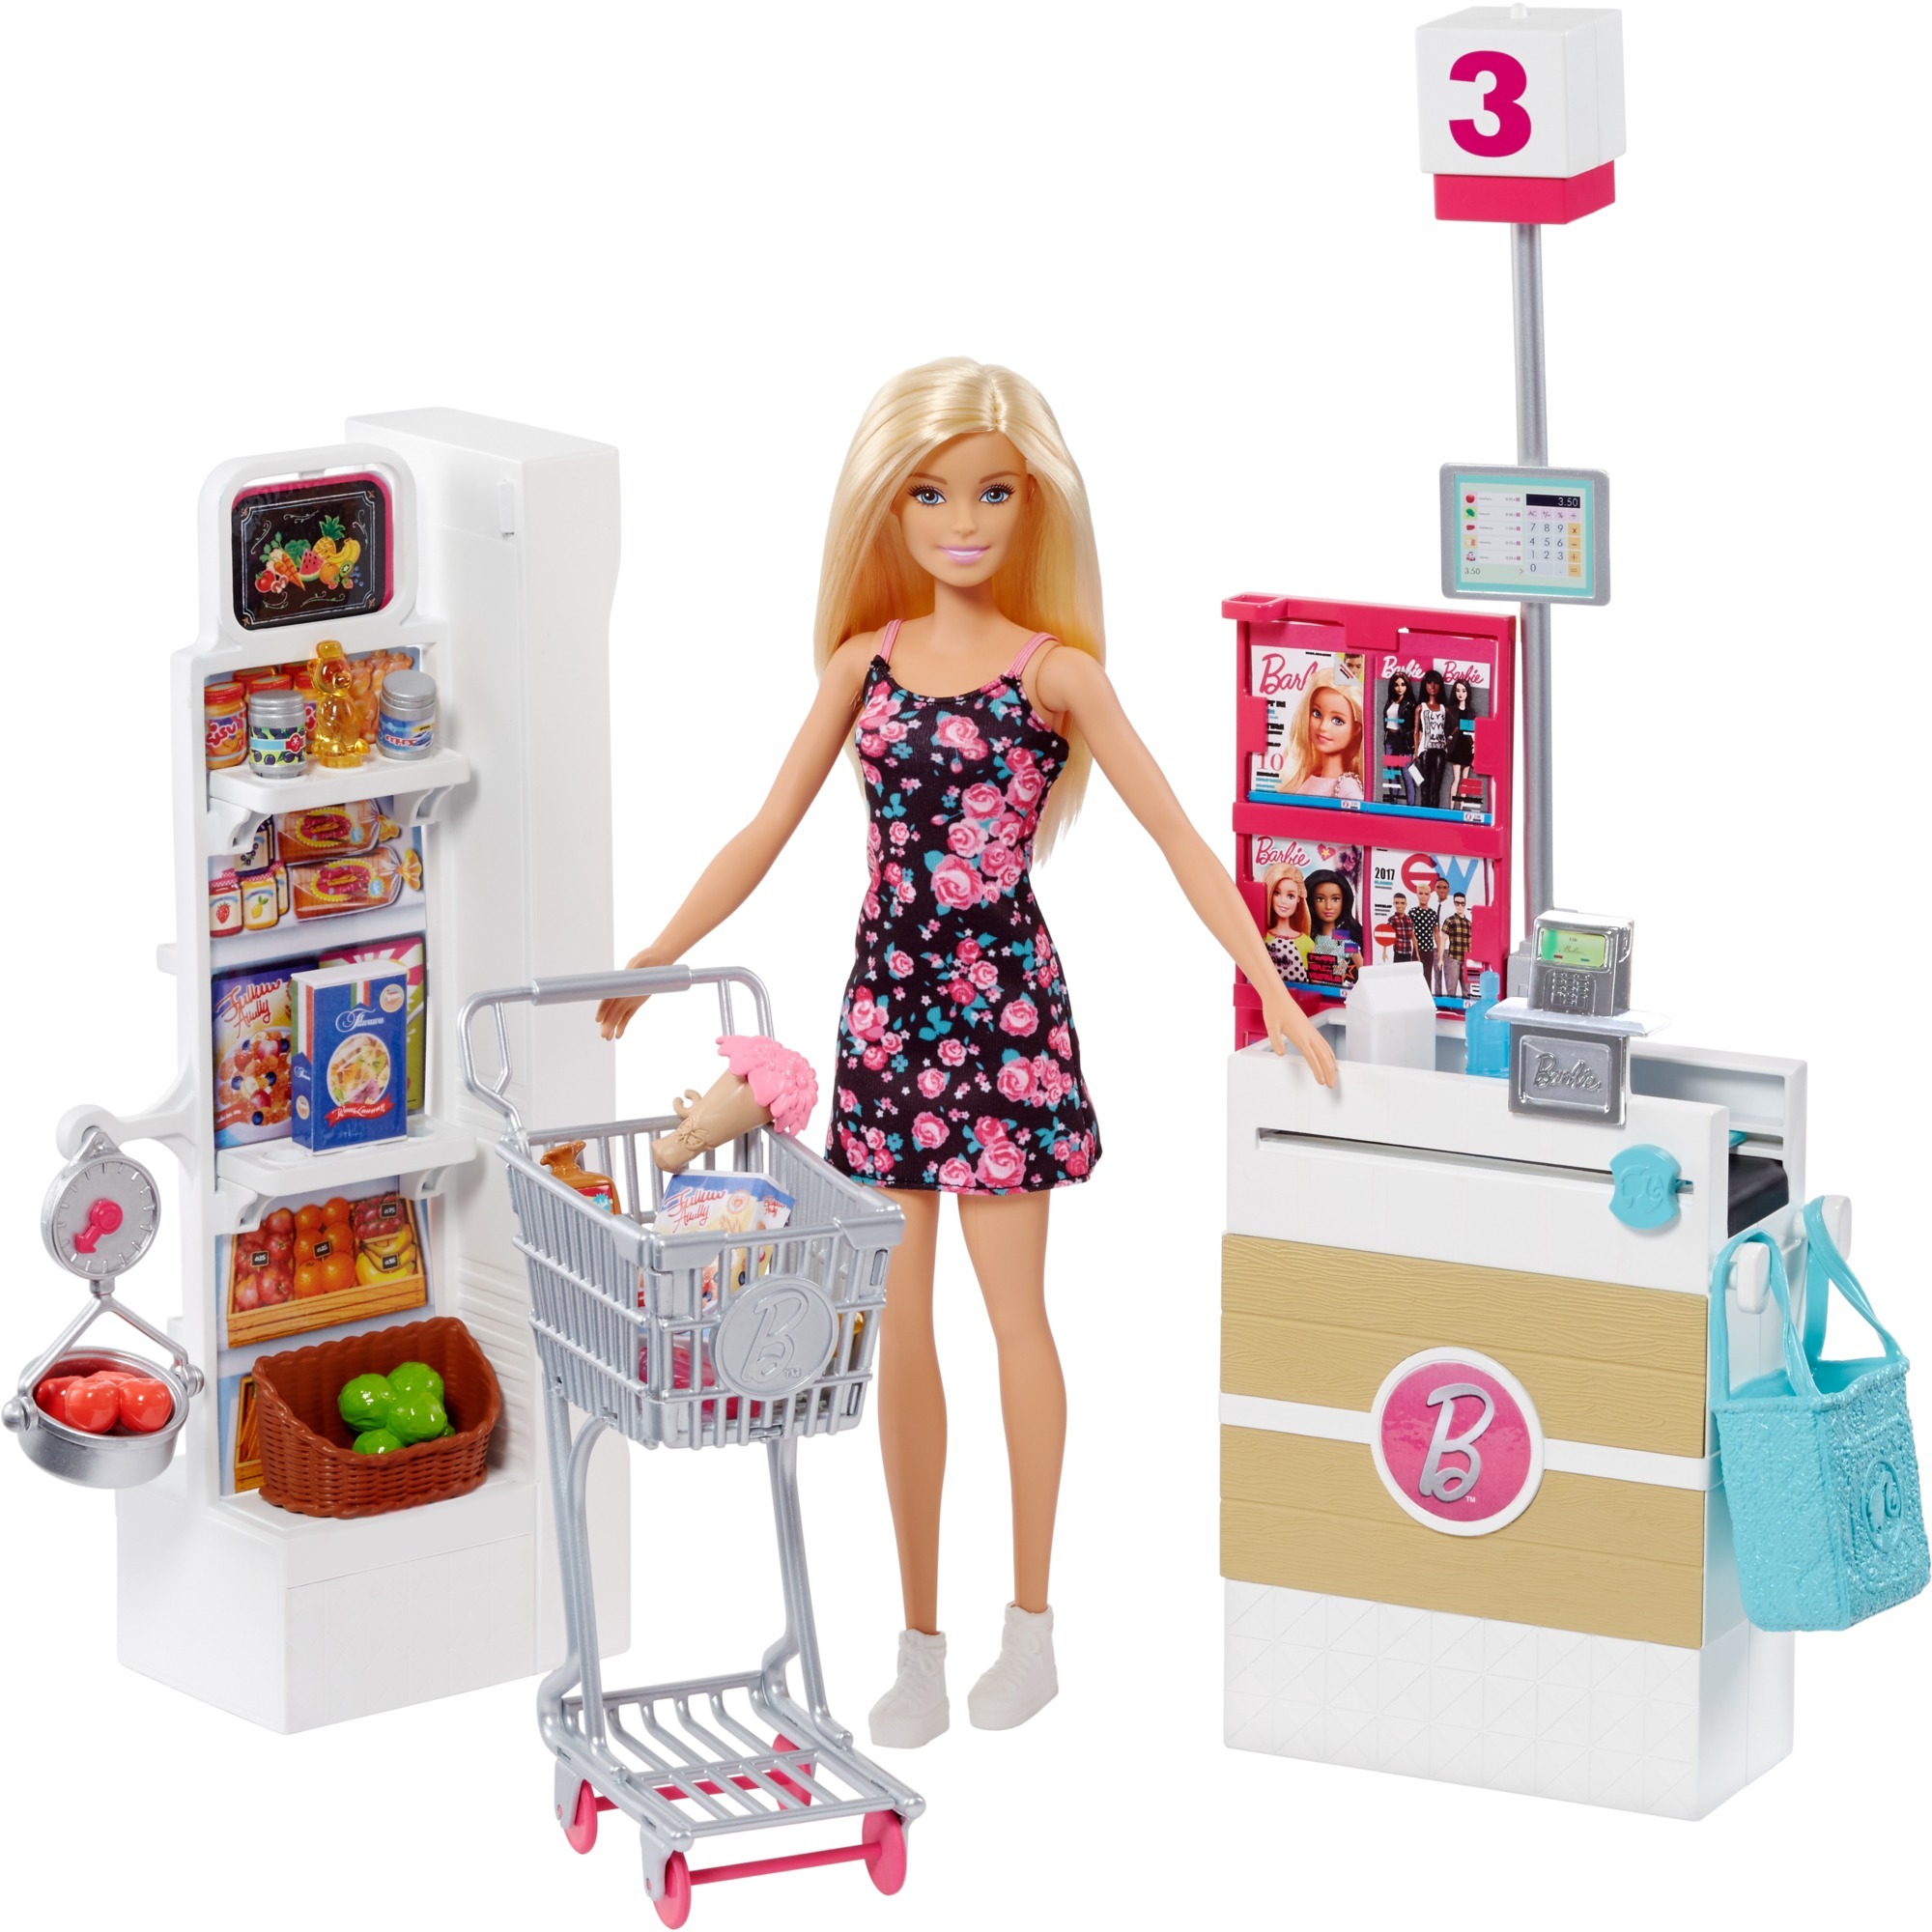 Image of Alternate - Barbie Supermarkt und Puppe online einkaufen bei Alternate